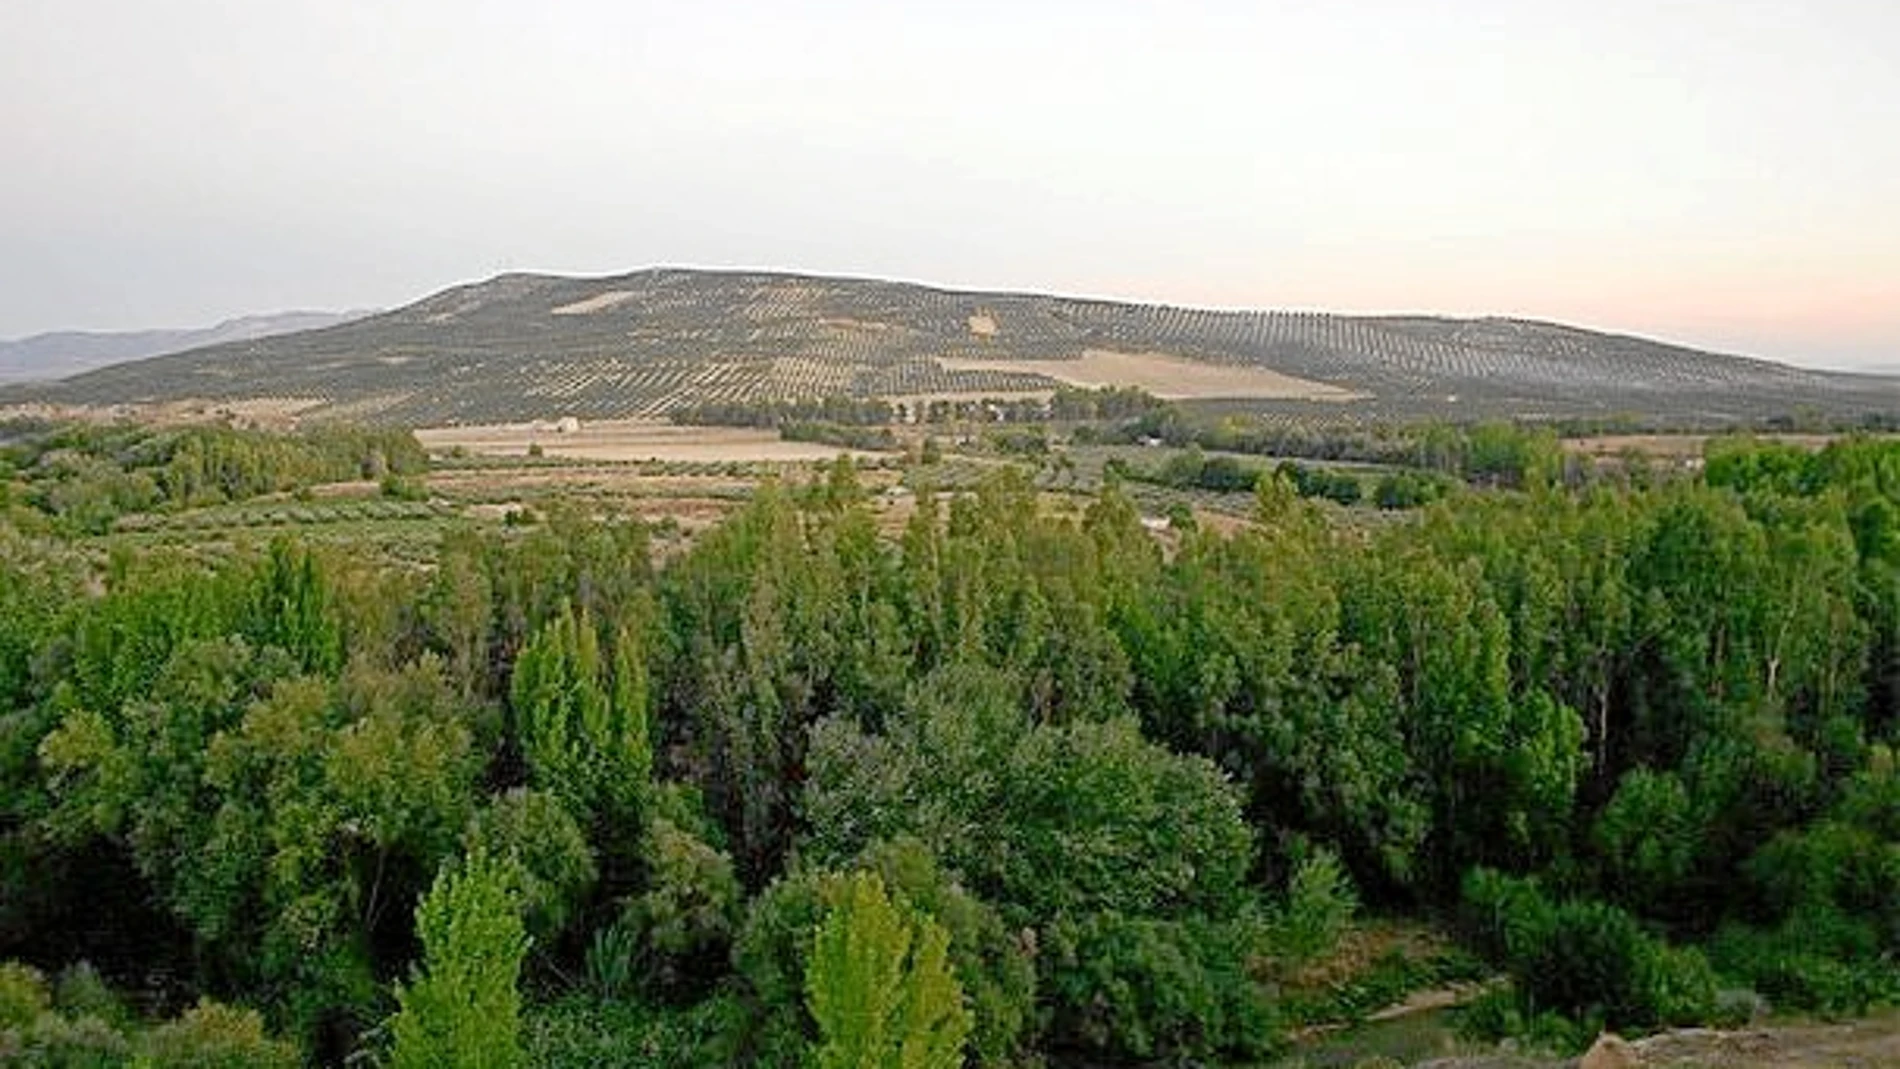 Vista del Cerro de las Albahacas, donde se han hallado tachuelas de sandalias romanas